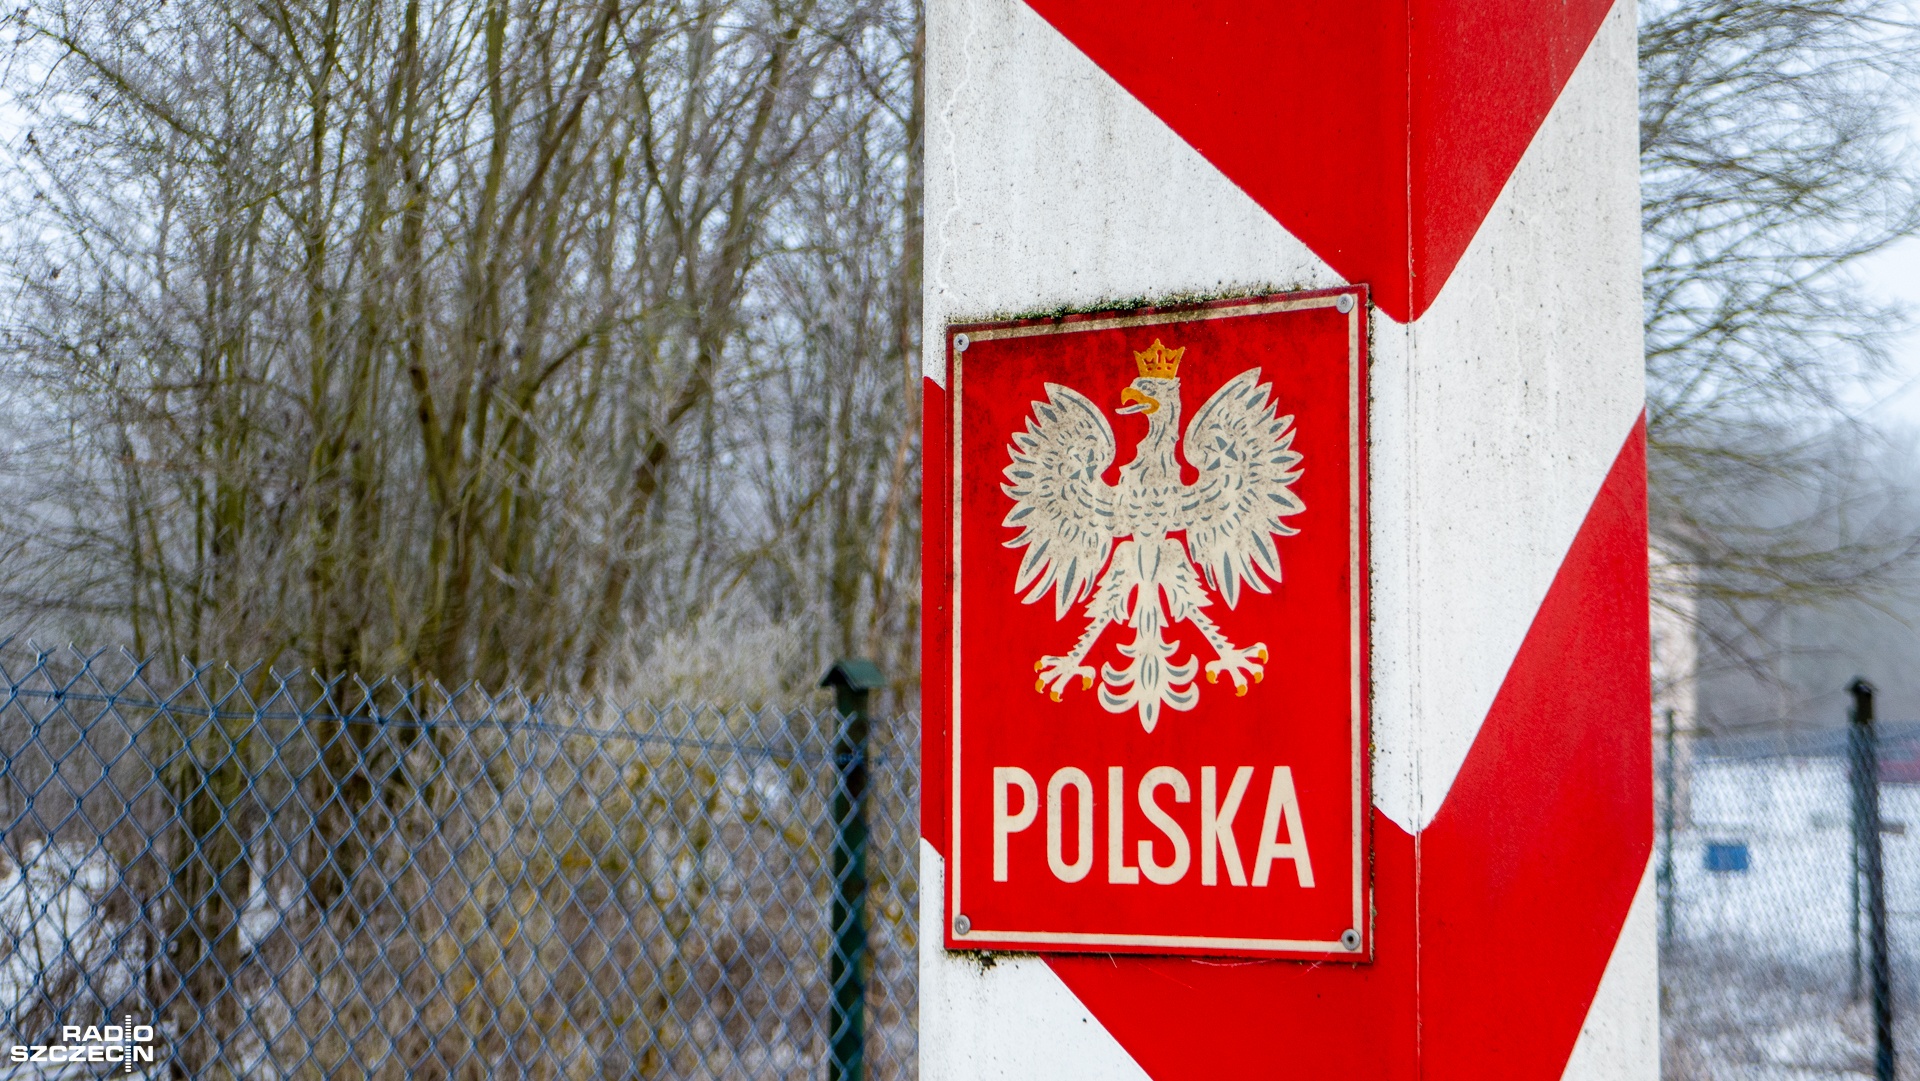 Cykliczne kontrole na granicy z Niemcami - wprowadzone od października ubiegłego roku - mają przeciwdziałać nielegalnej migracji. To temat wrażliwy i oburzający szczególnie kierowców przez tworzące się korki na przejściach granicznych m.in. w Kołbaskowie.